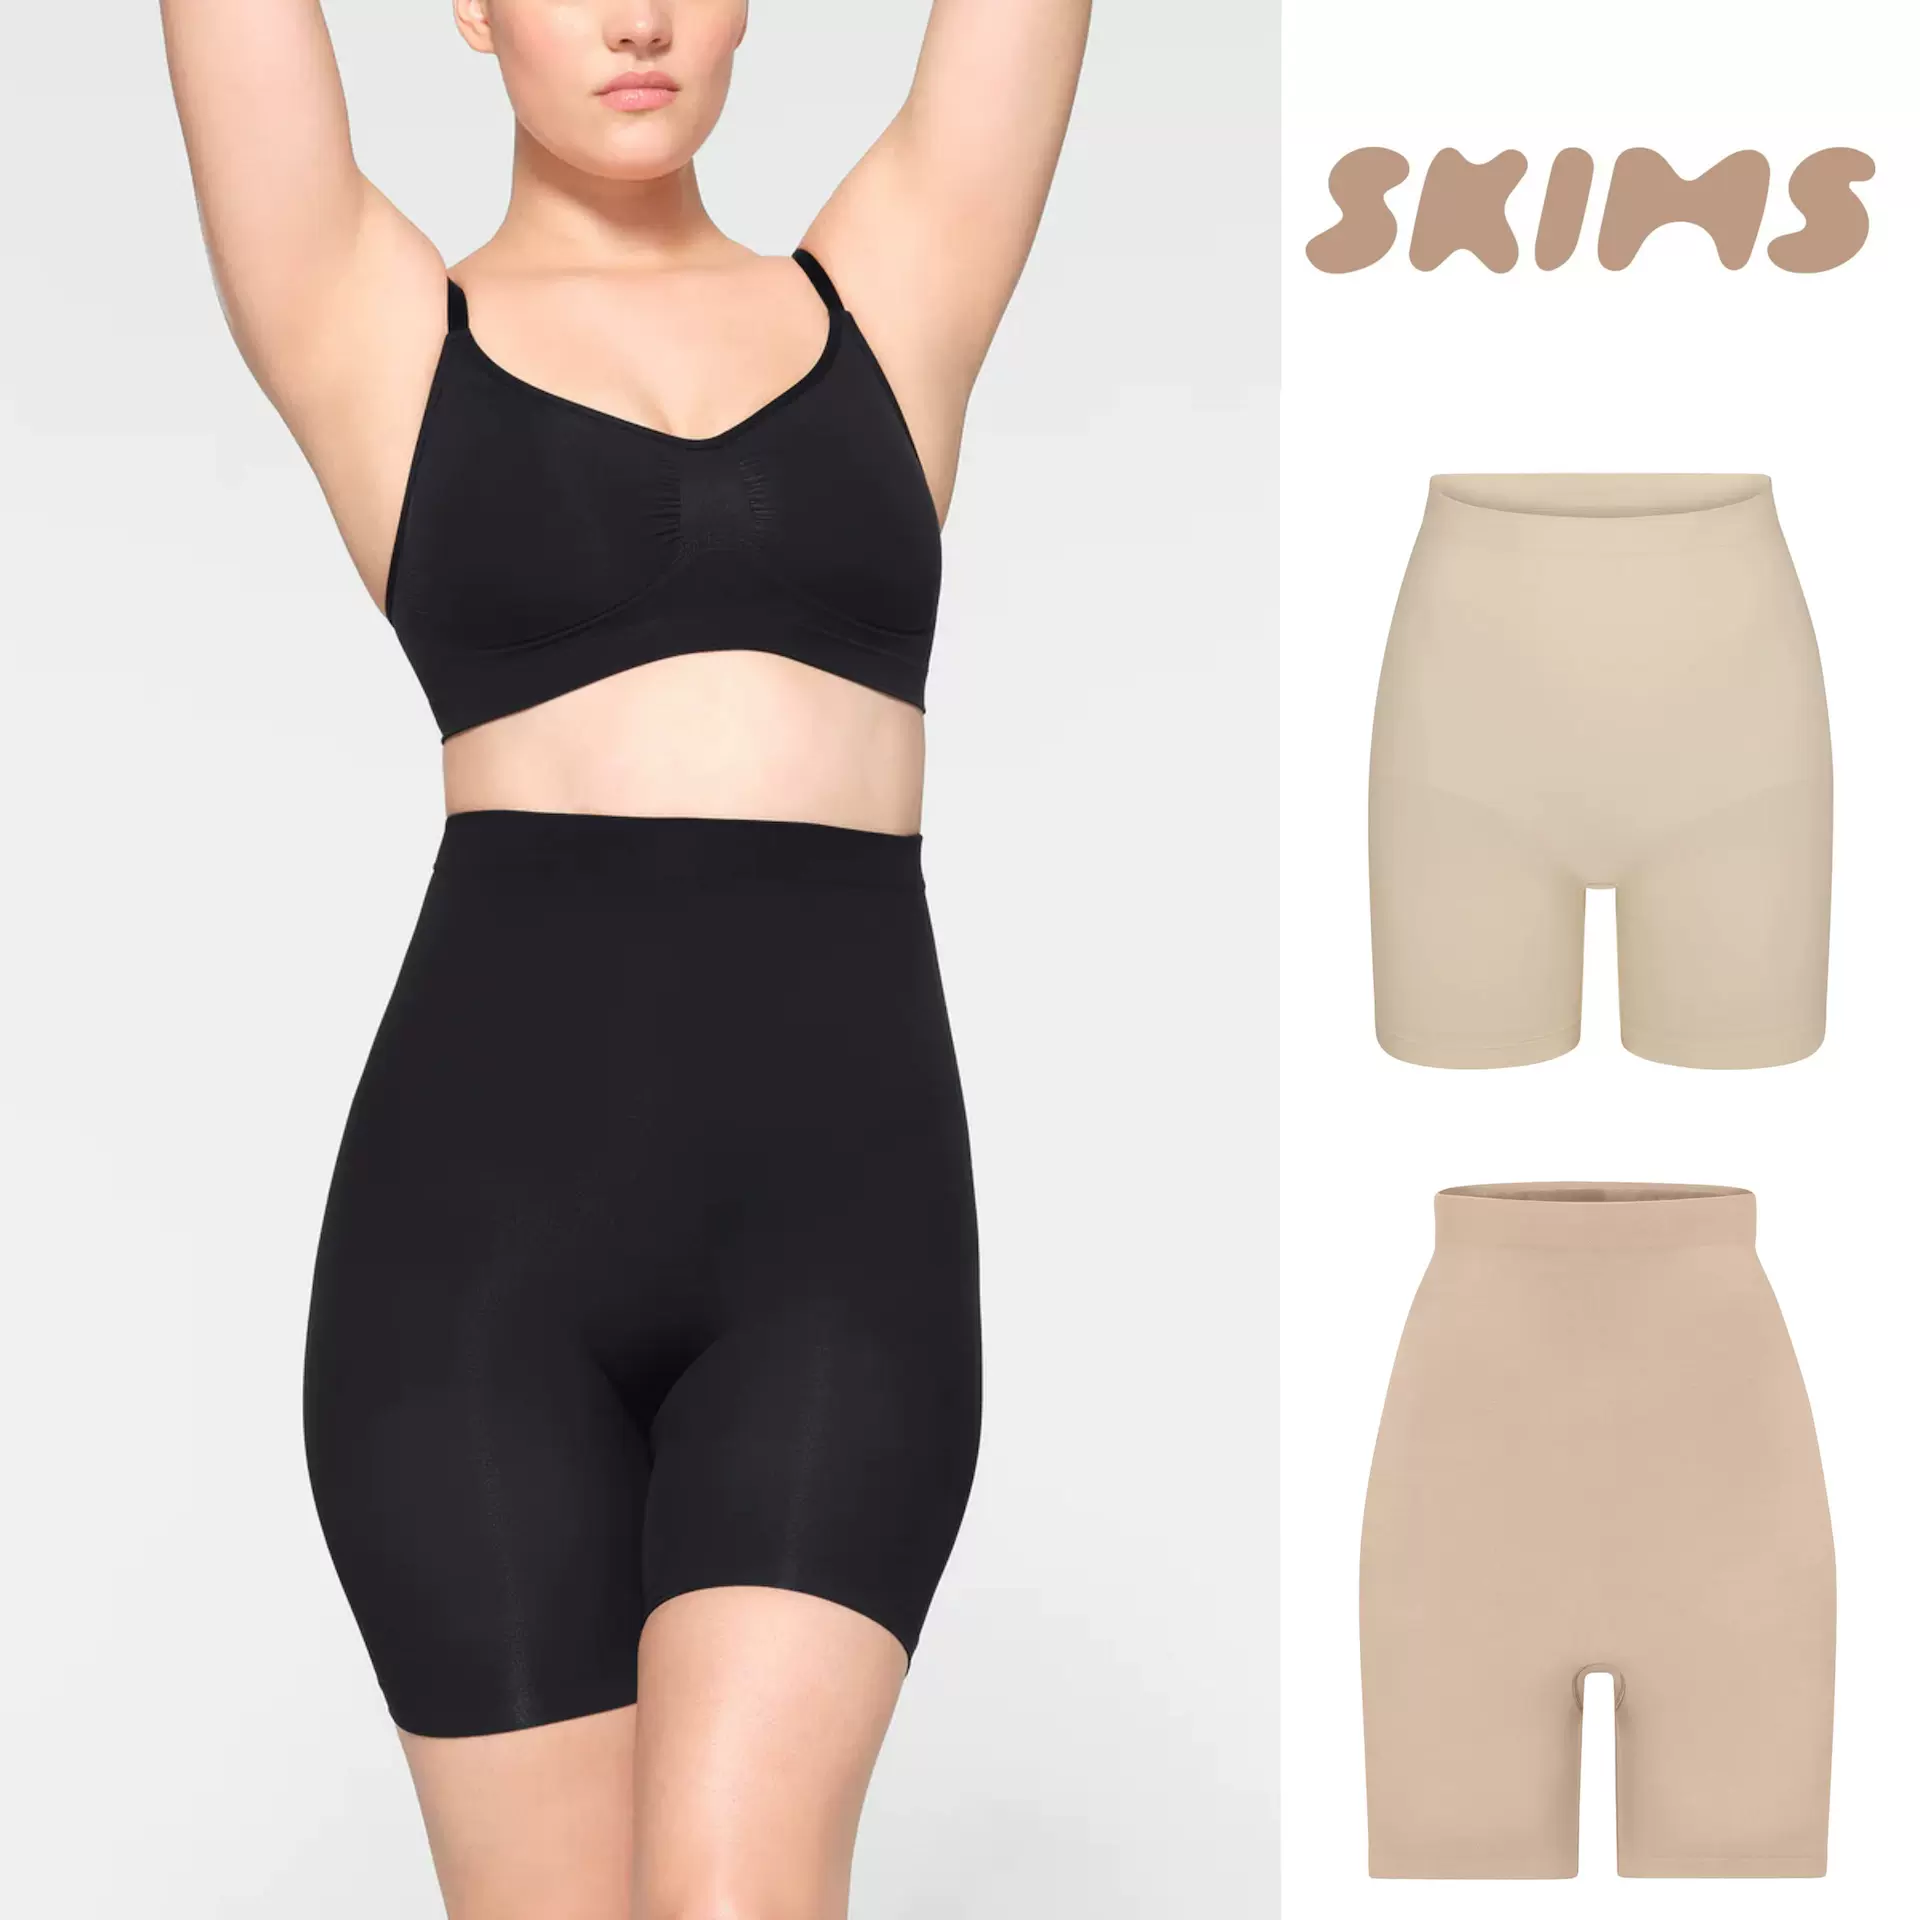 部分現貨SKIMS FITS EVERYBODY DIPPED FRONT THONG低腰丁字內褲-Taobao